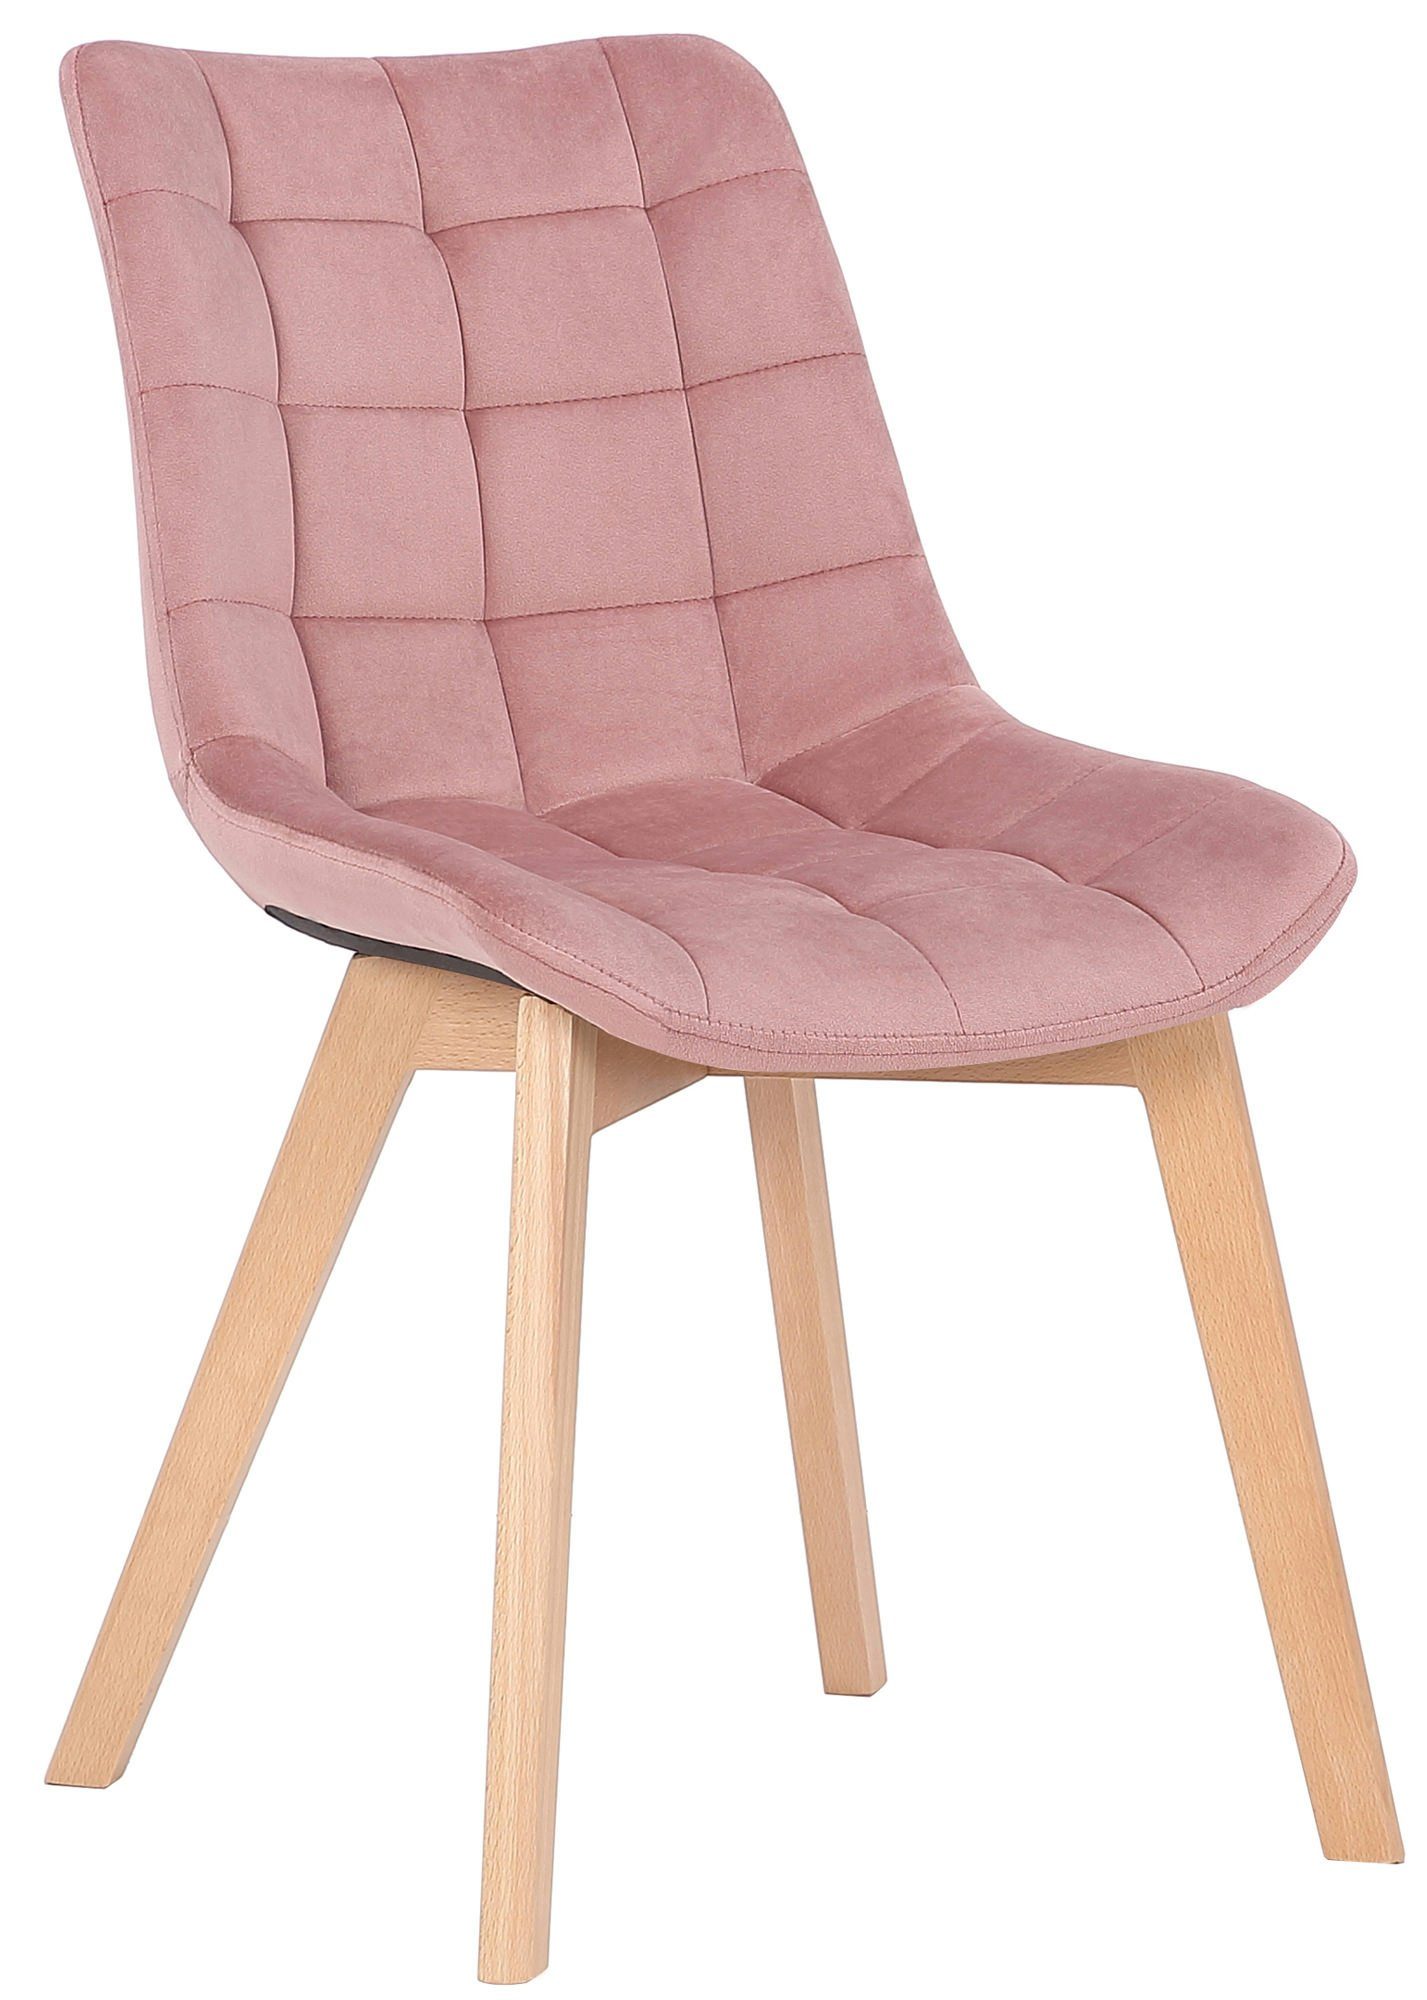 TPFLiving Esszimmerstuhl Passat mit hochwertig gepolsterter Sitzfläche - Konferenzstuhl (Küchenstuhl - Esstischstuhl - Wohnzimmerstuhl - Polsterstuhl), Gestell: Buchenholz Natura - Sitzfläche: Samt pink